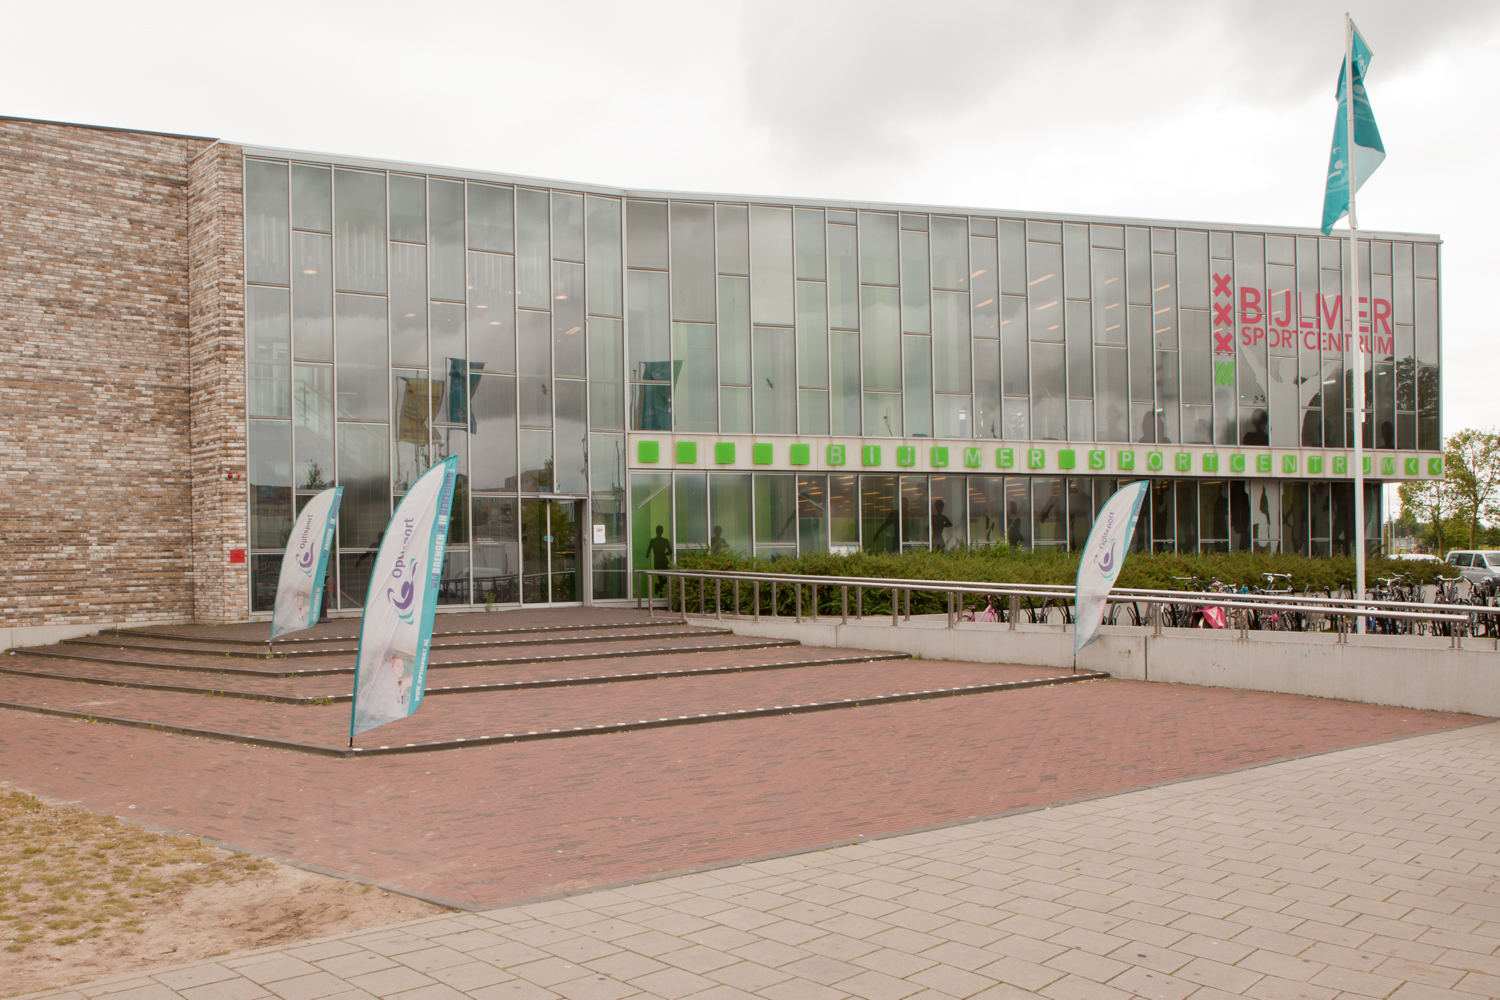 Bijlmer Sportcentrum